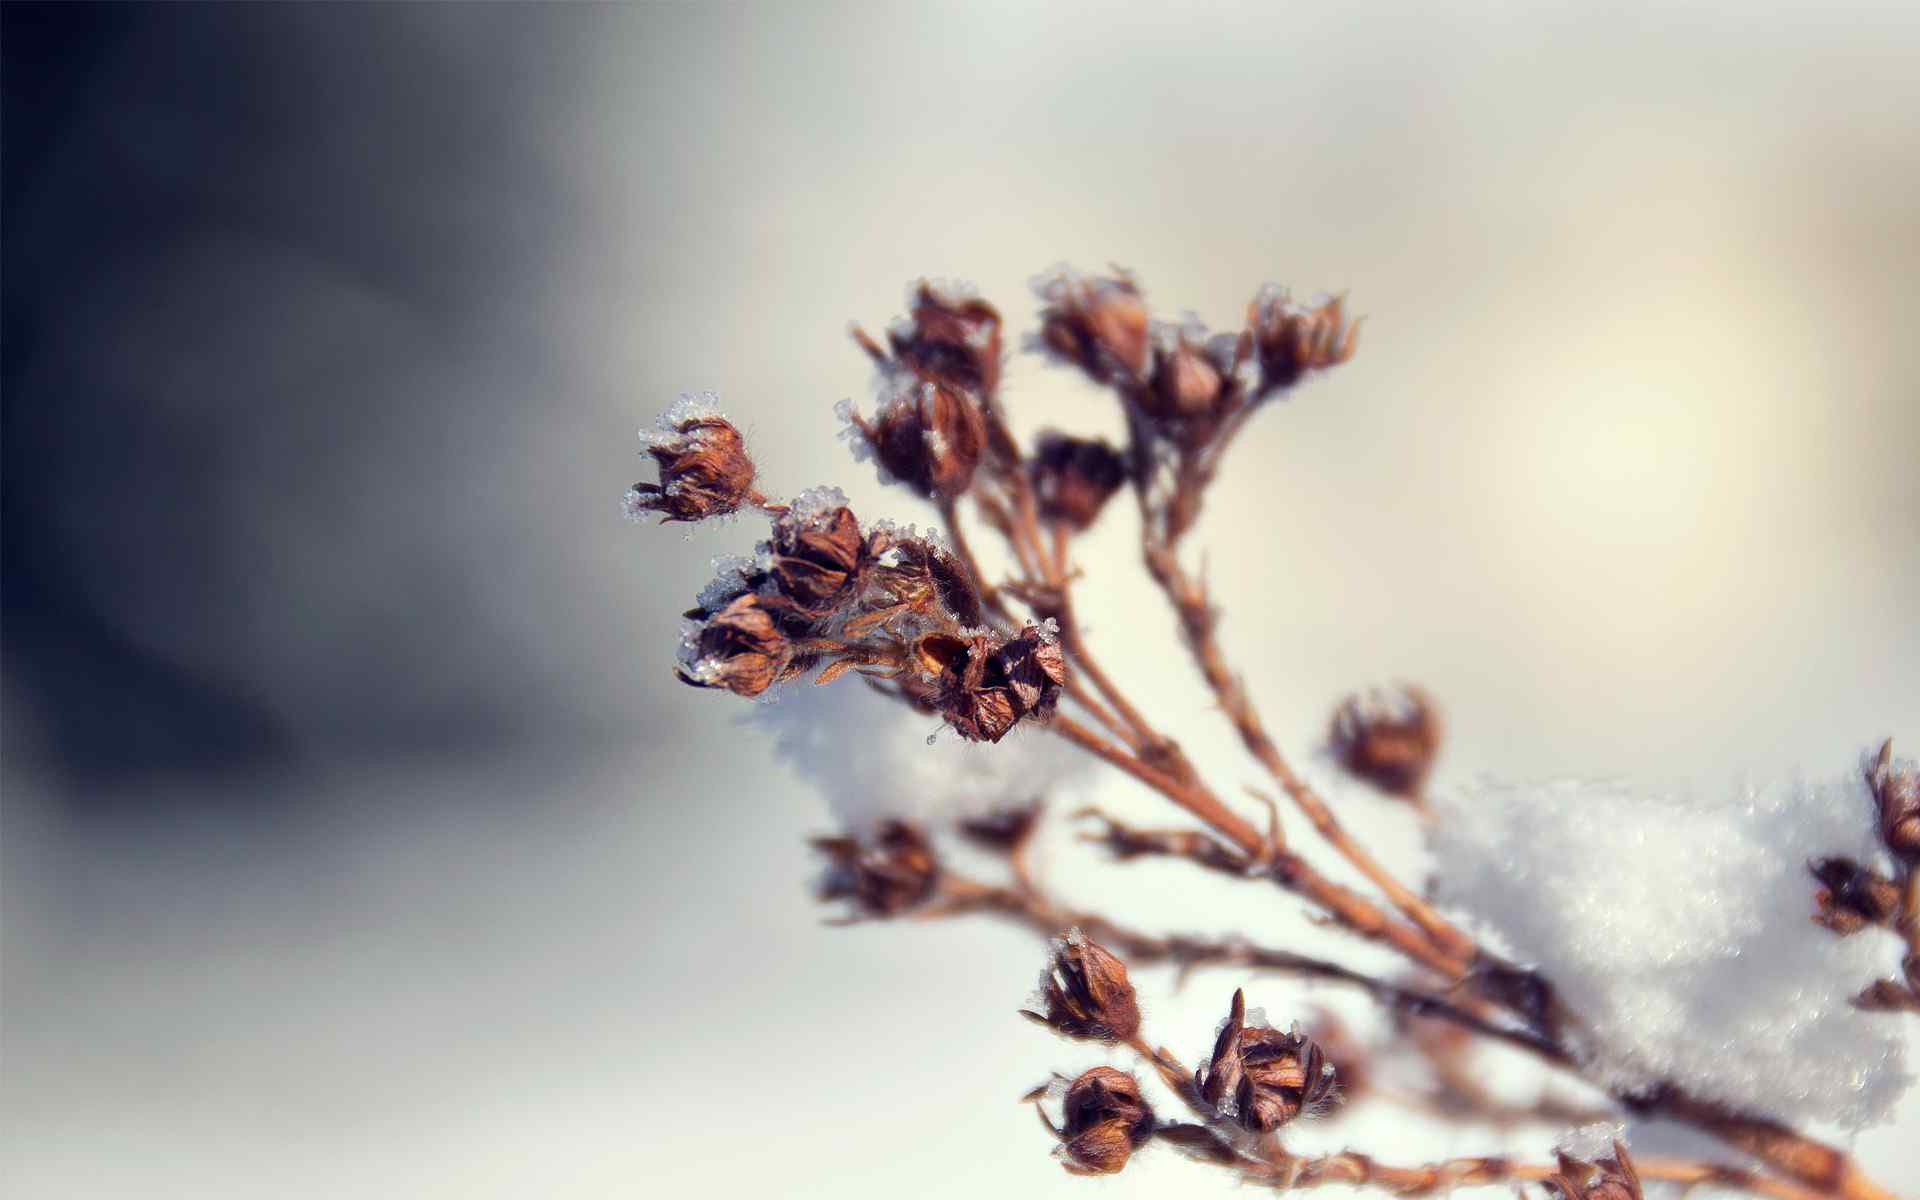 冬季枯萎植物摄影壁纸